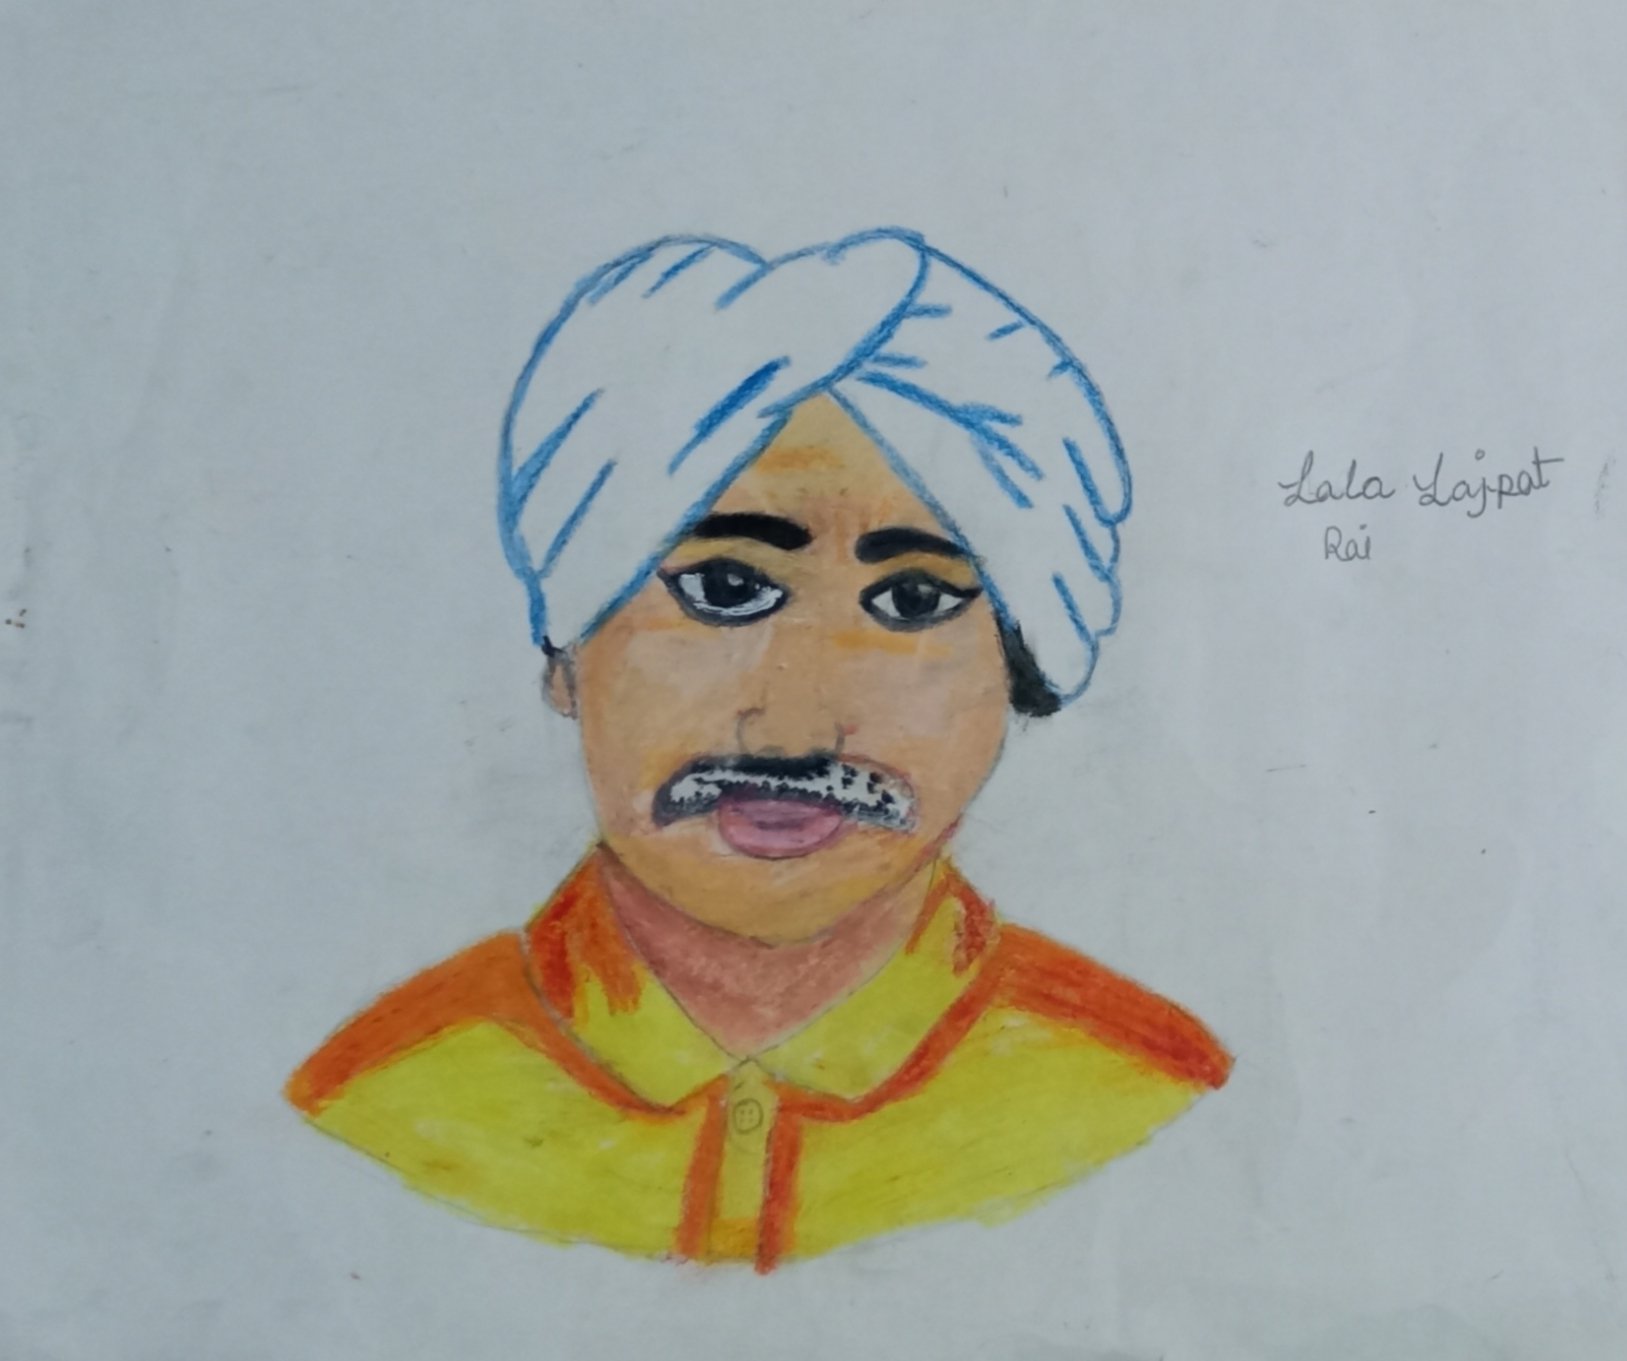 लाला लाजपत राय जयंती पर चित्र बनाना सीखें//Lala Lajpat Rai Birthday  Poster//How to Draw Lala Lajpat - YouTube